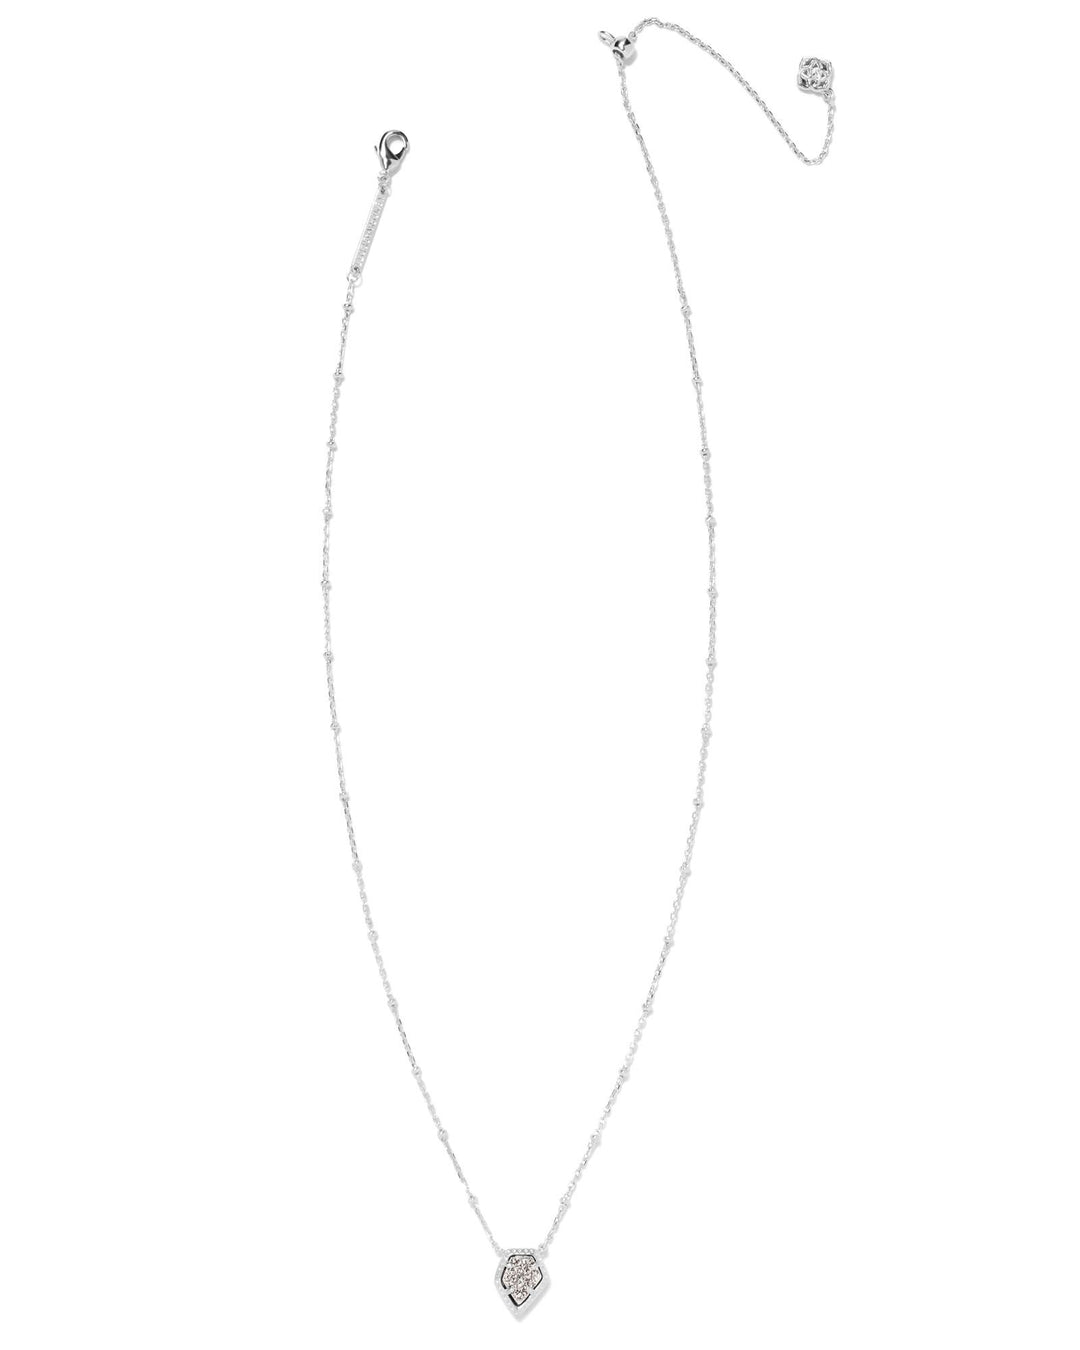 Kendra Scott Tess Satellite Pendant Necklace in Platinum Drusy